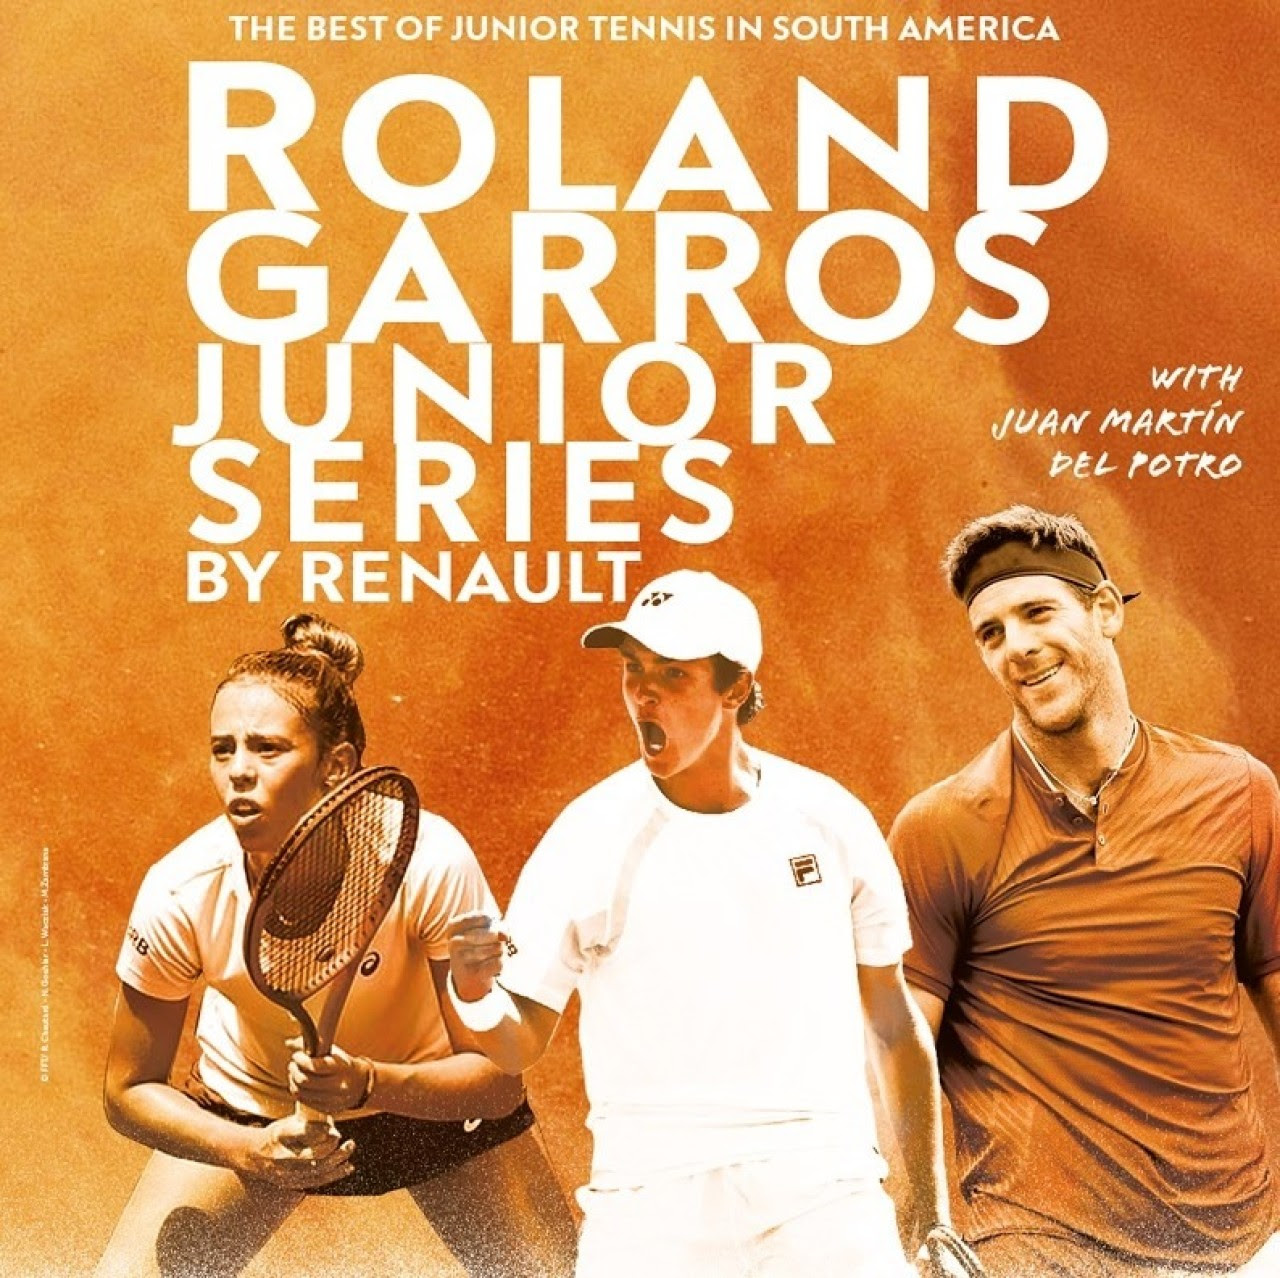 Renault patrocina las RolandGarros Junior Series Perspectives